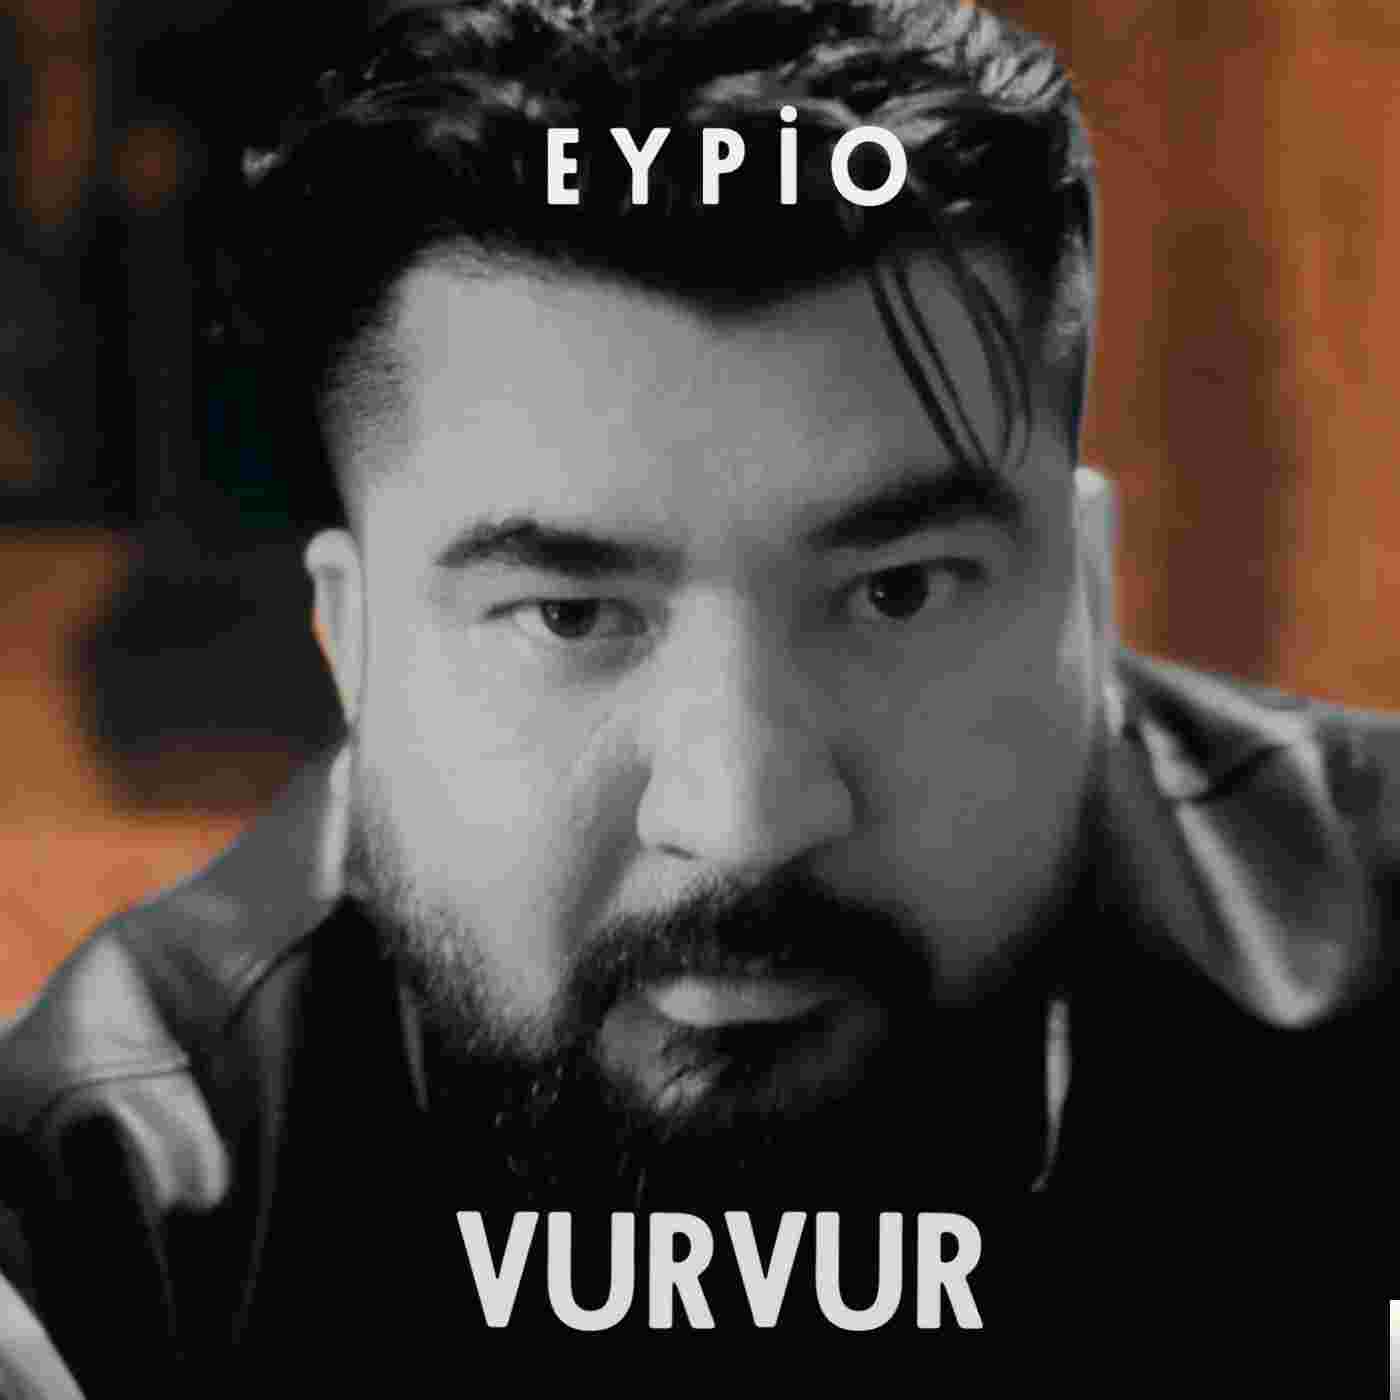 Eypio Vur Vur (2019)